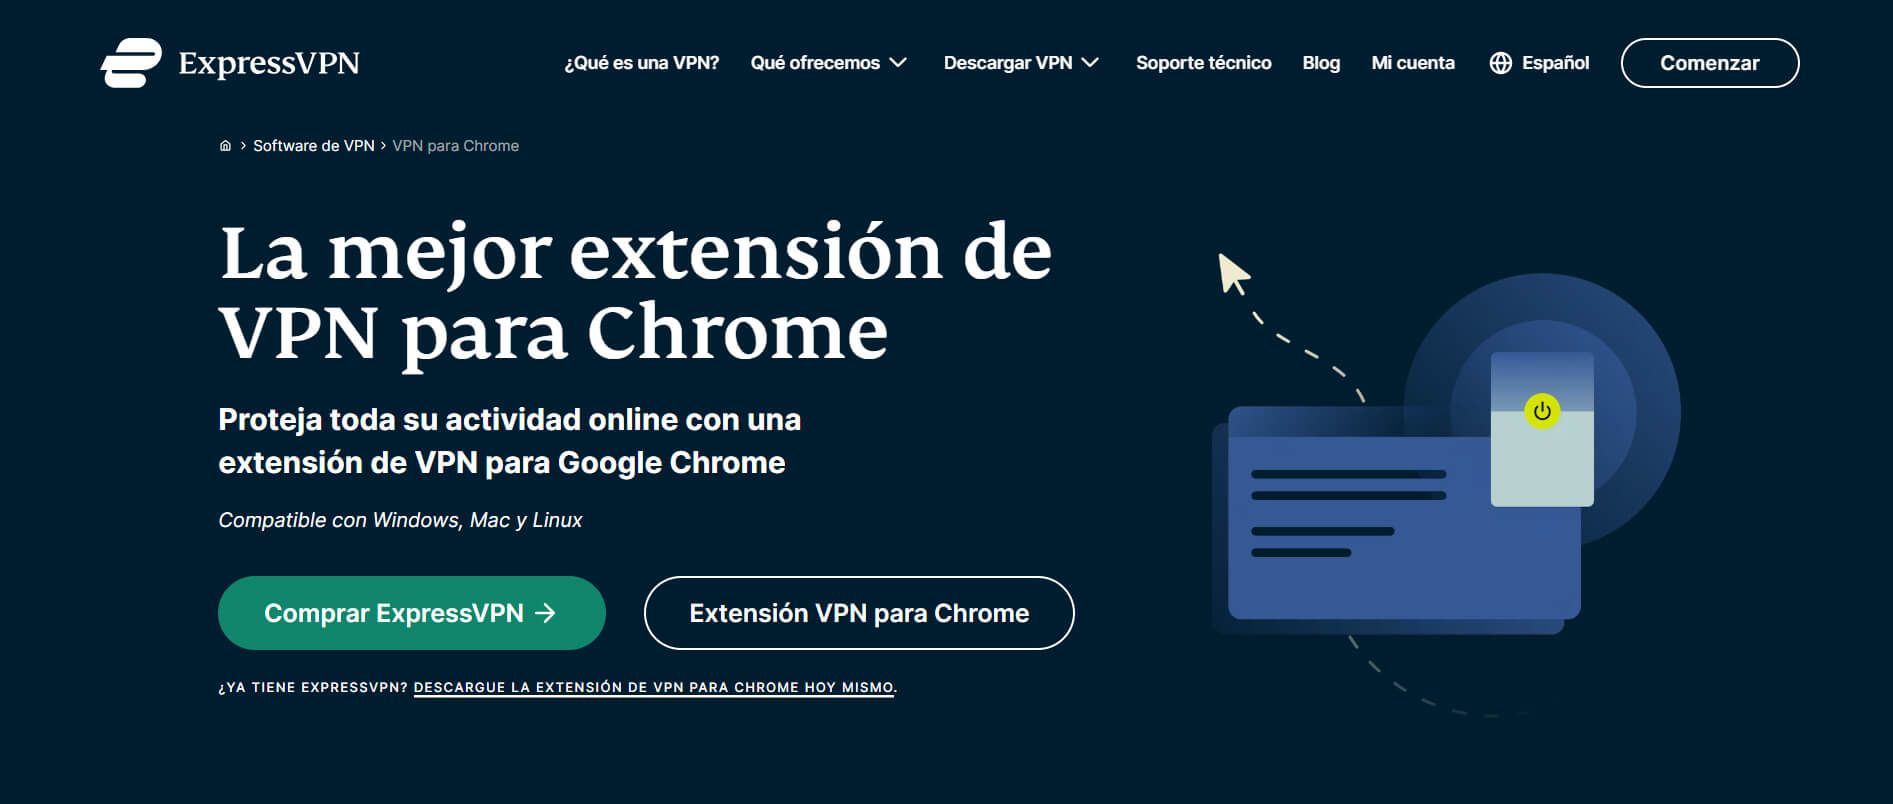 ExpressVPN Extensión VPN Chrome